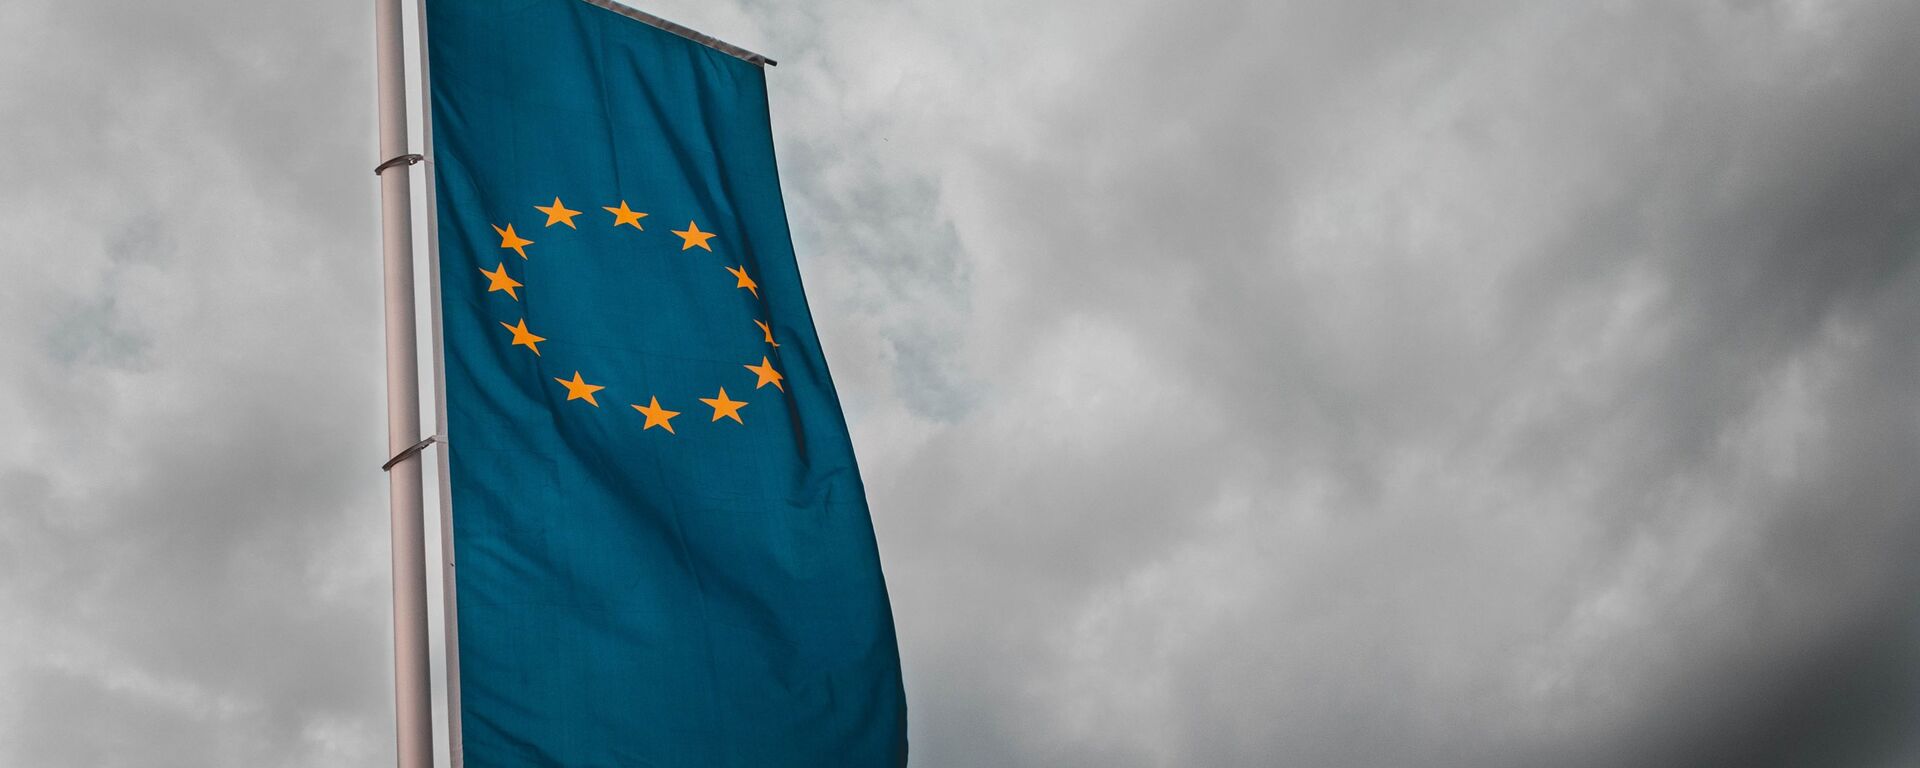 Bandera de la Unión Europea - Sputnik Mundo, 1920, 21.06.2021